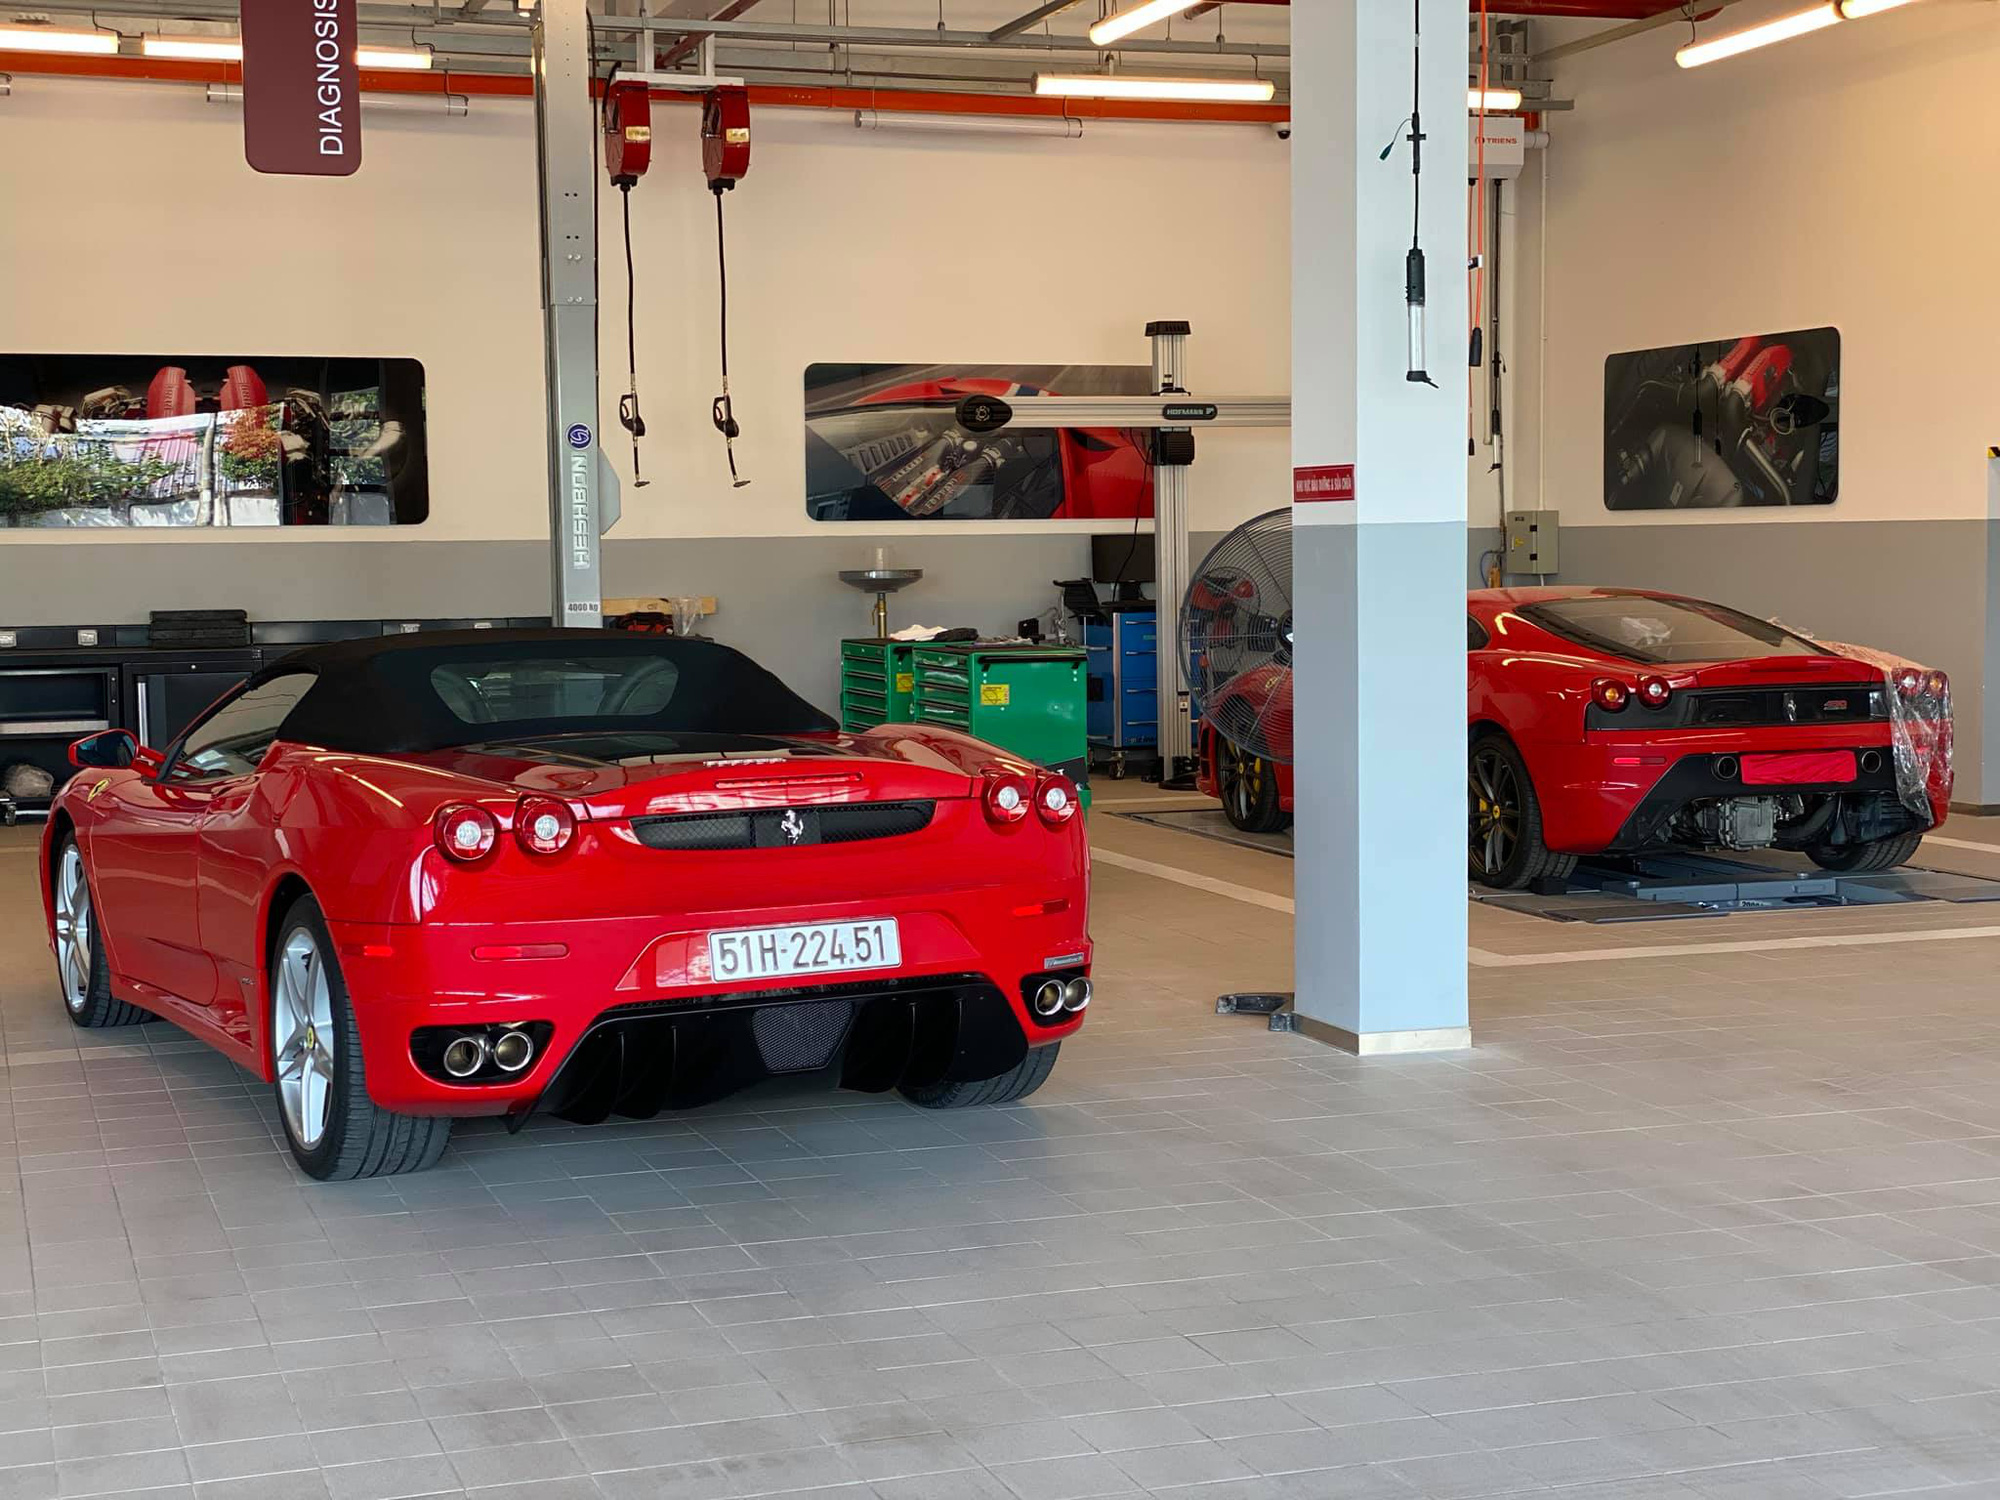 Cặp đôi Ferrari F430 trong lô xe của trùm Dũng ‘mặt sắt’ bất ngờ trở lại với diện mạo bóng bẩy - Ảnh 2.